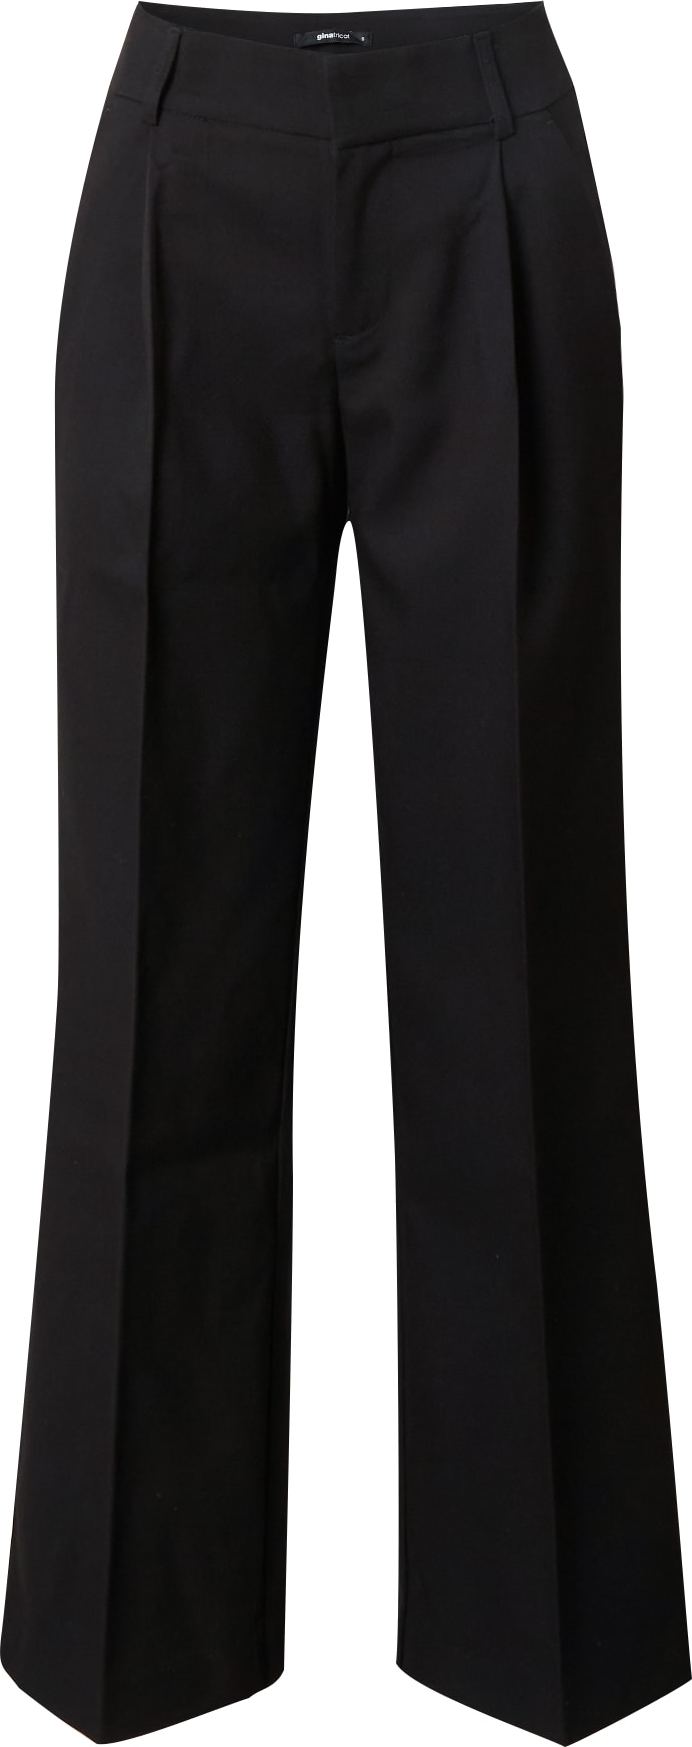 Kalhoty s puky 'Tammie' Gina Tricot černá